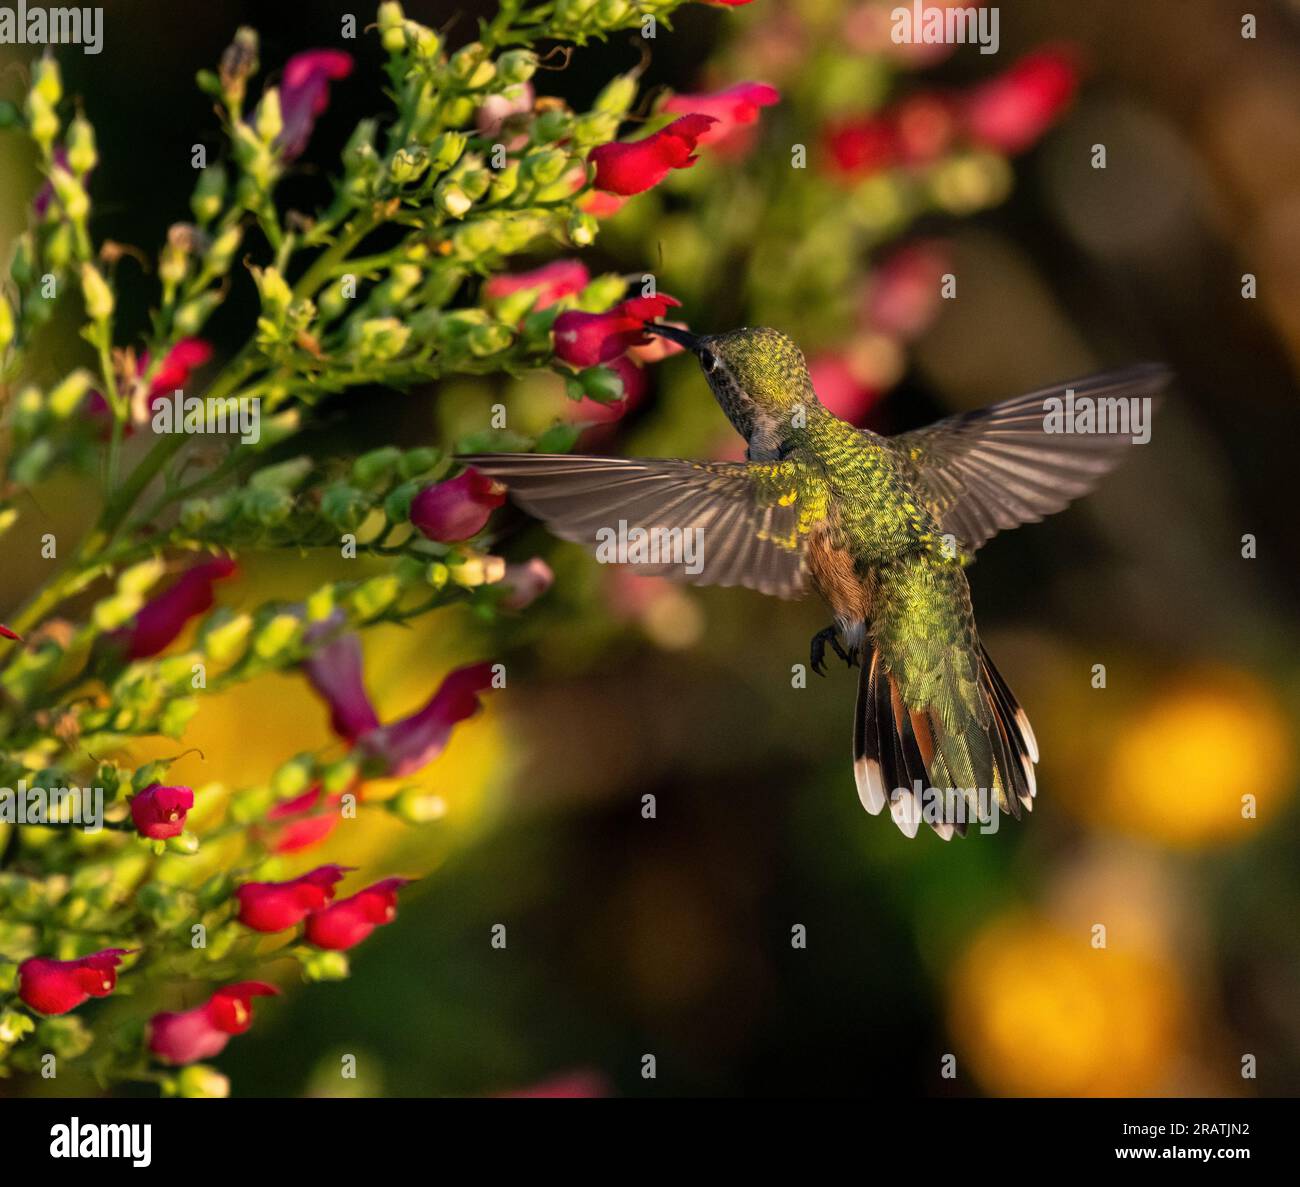 Die Rückseite eines weiblichen Kolibri mit offenen Flügeln und gebranntem Schwanz bestäubt in einer farbenfrohen Gartenumgebung. Stockfoto